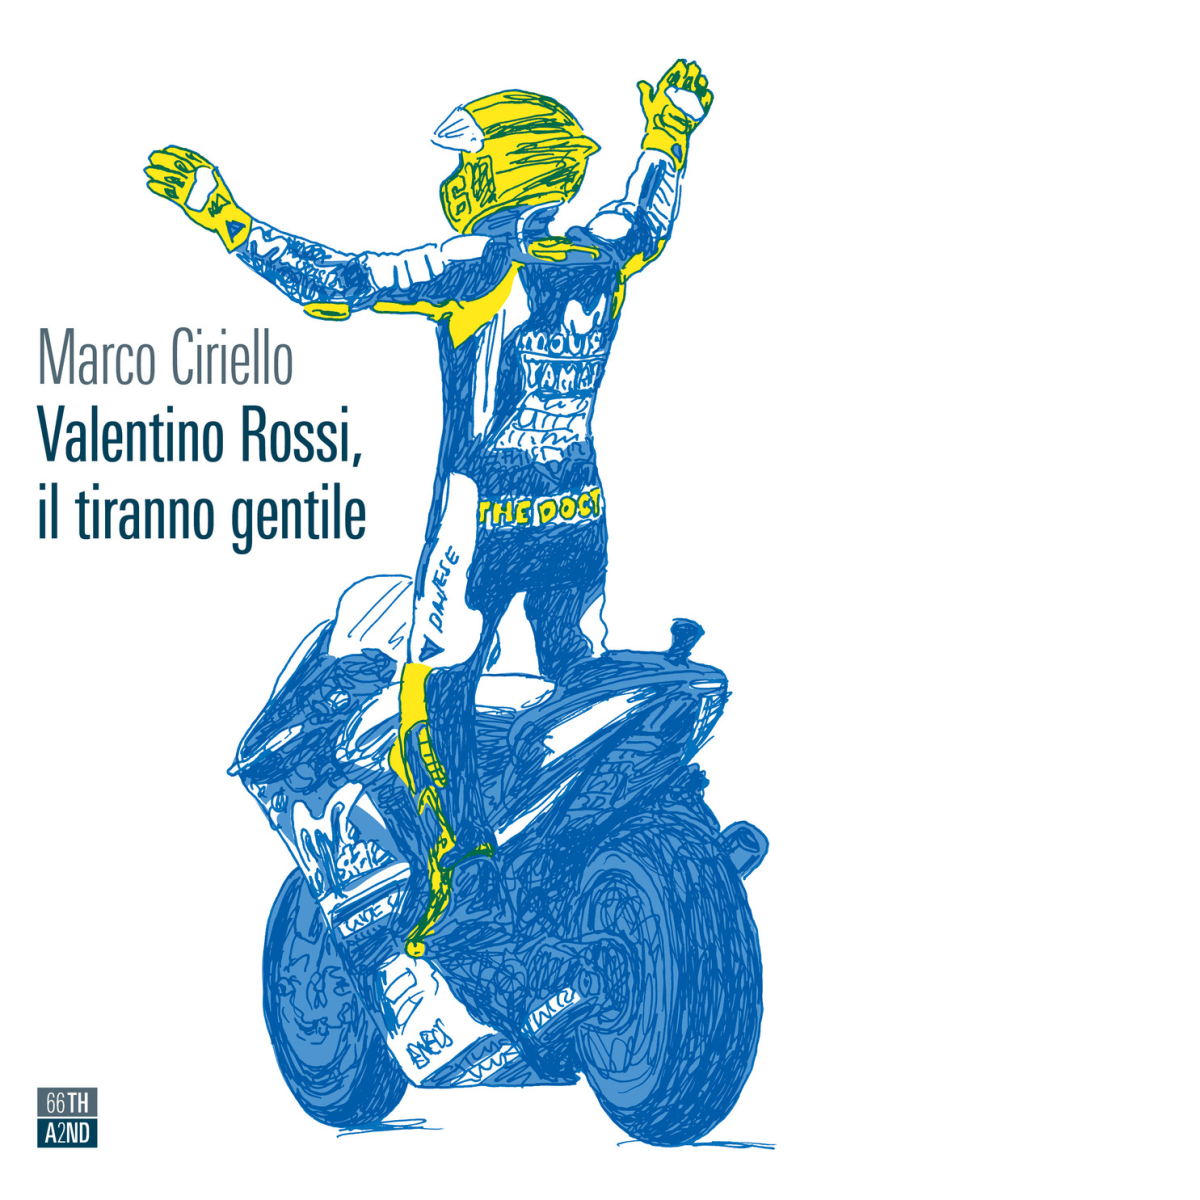 Valentino Rossi, il tiranno gentile di Marco Ciriello,  2021,  66th And 2nd